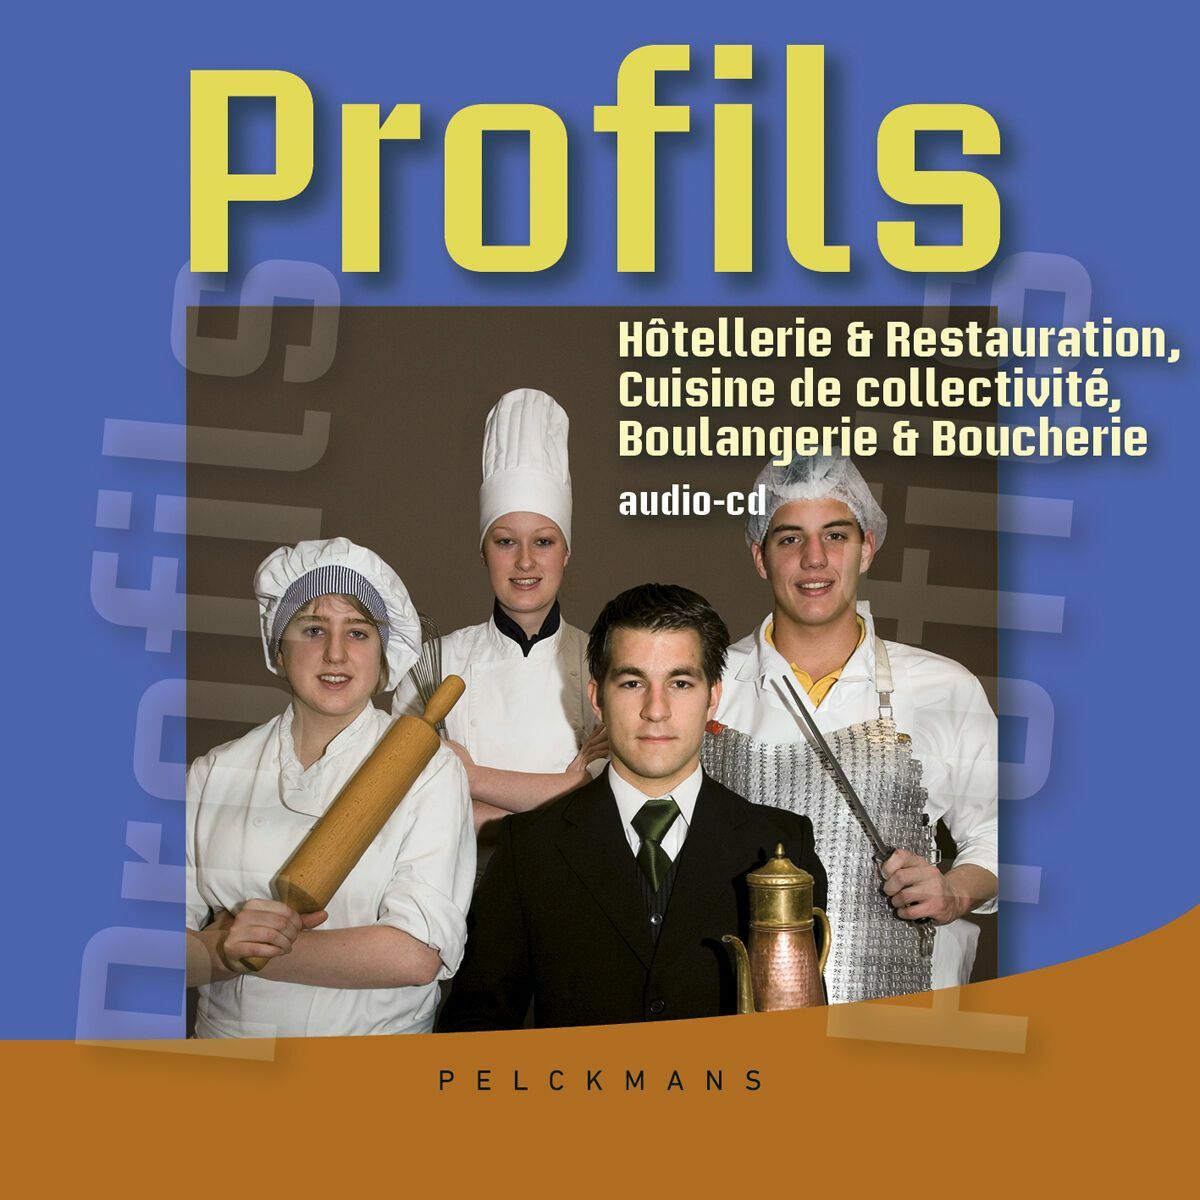 Profils Hôtellerie & Restaurant, Boulangerie & Boucherie: Audio-cd